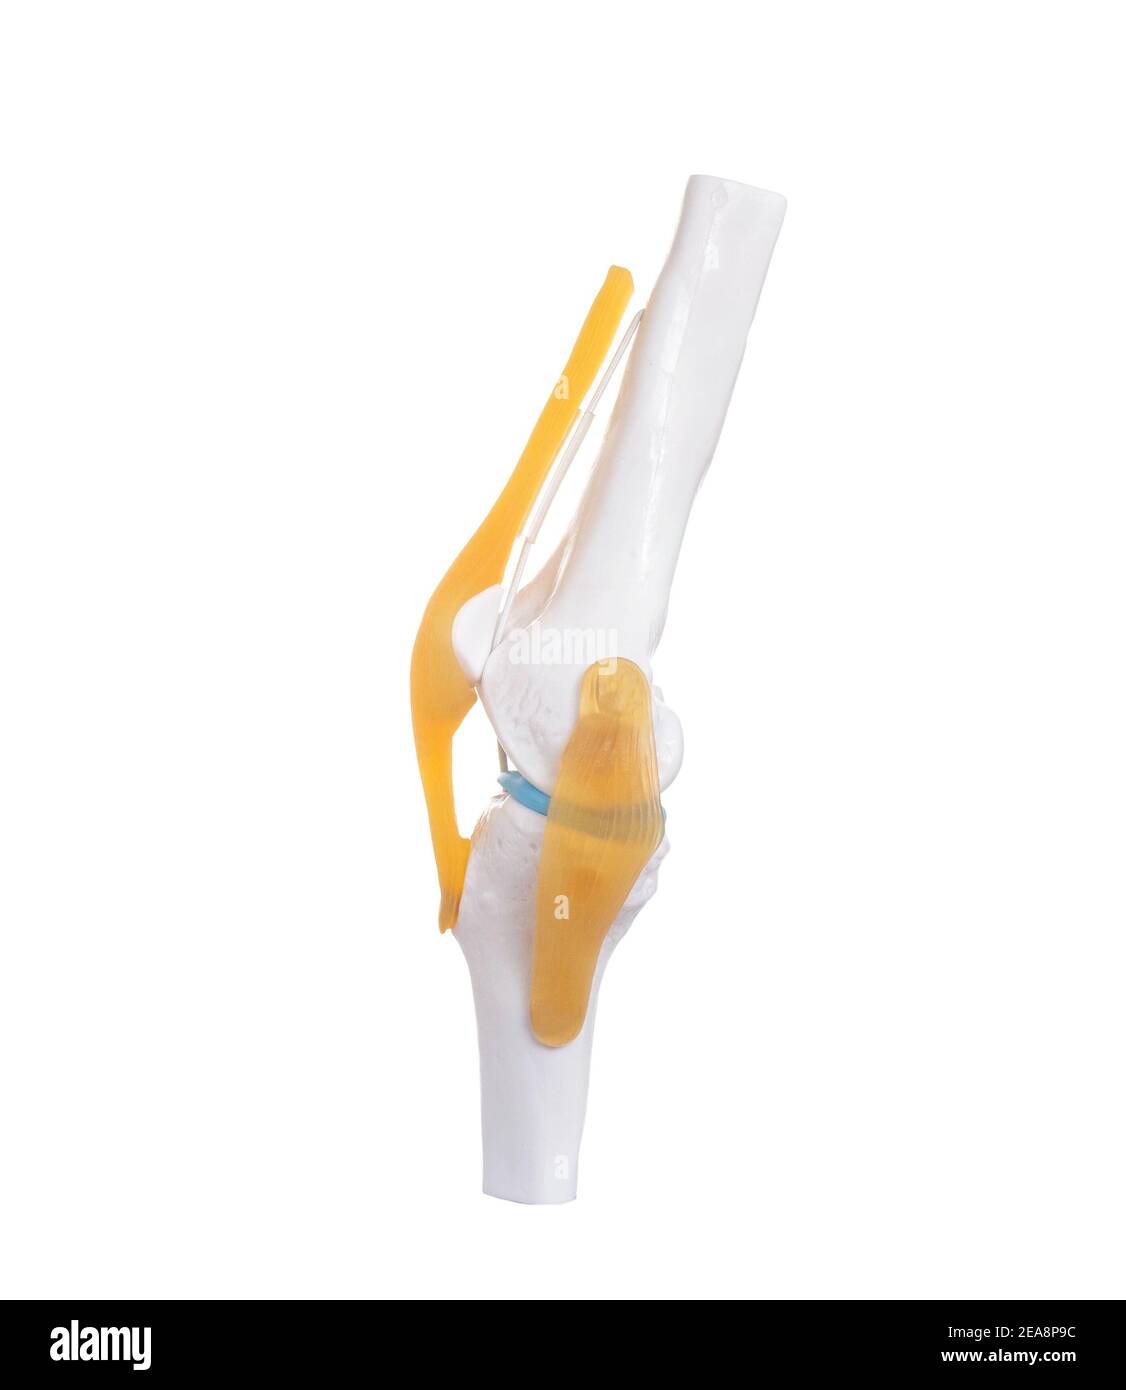 Kniegelenk Modell auf weißem Hintergrund, isolieren. Behandlungskonzept für Erkrankungen des Bandapparats des Knies Stockfoto